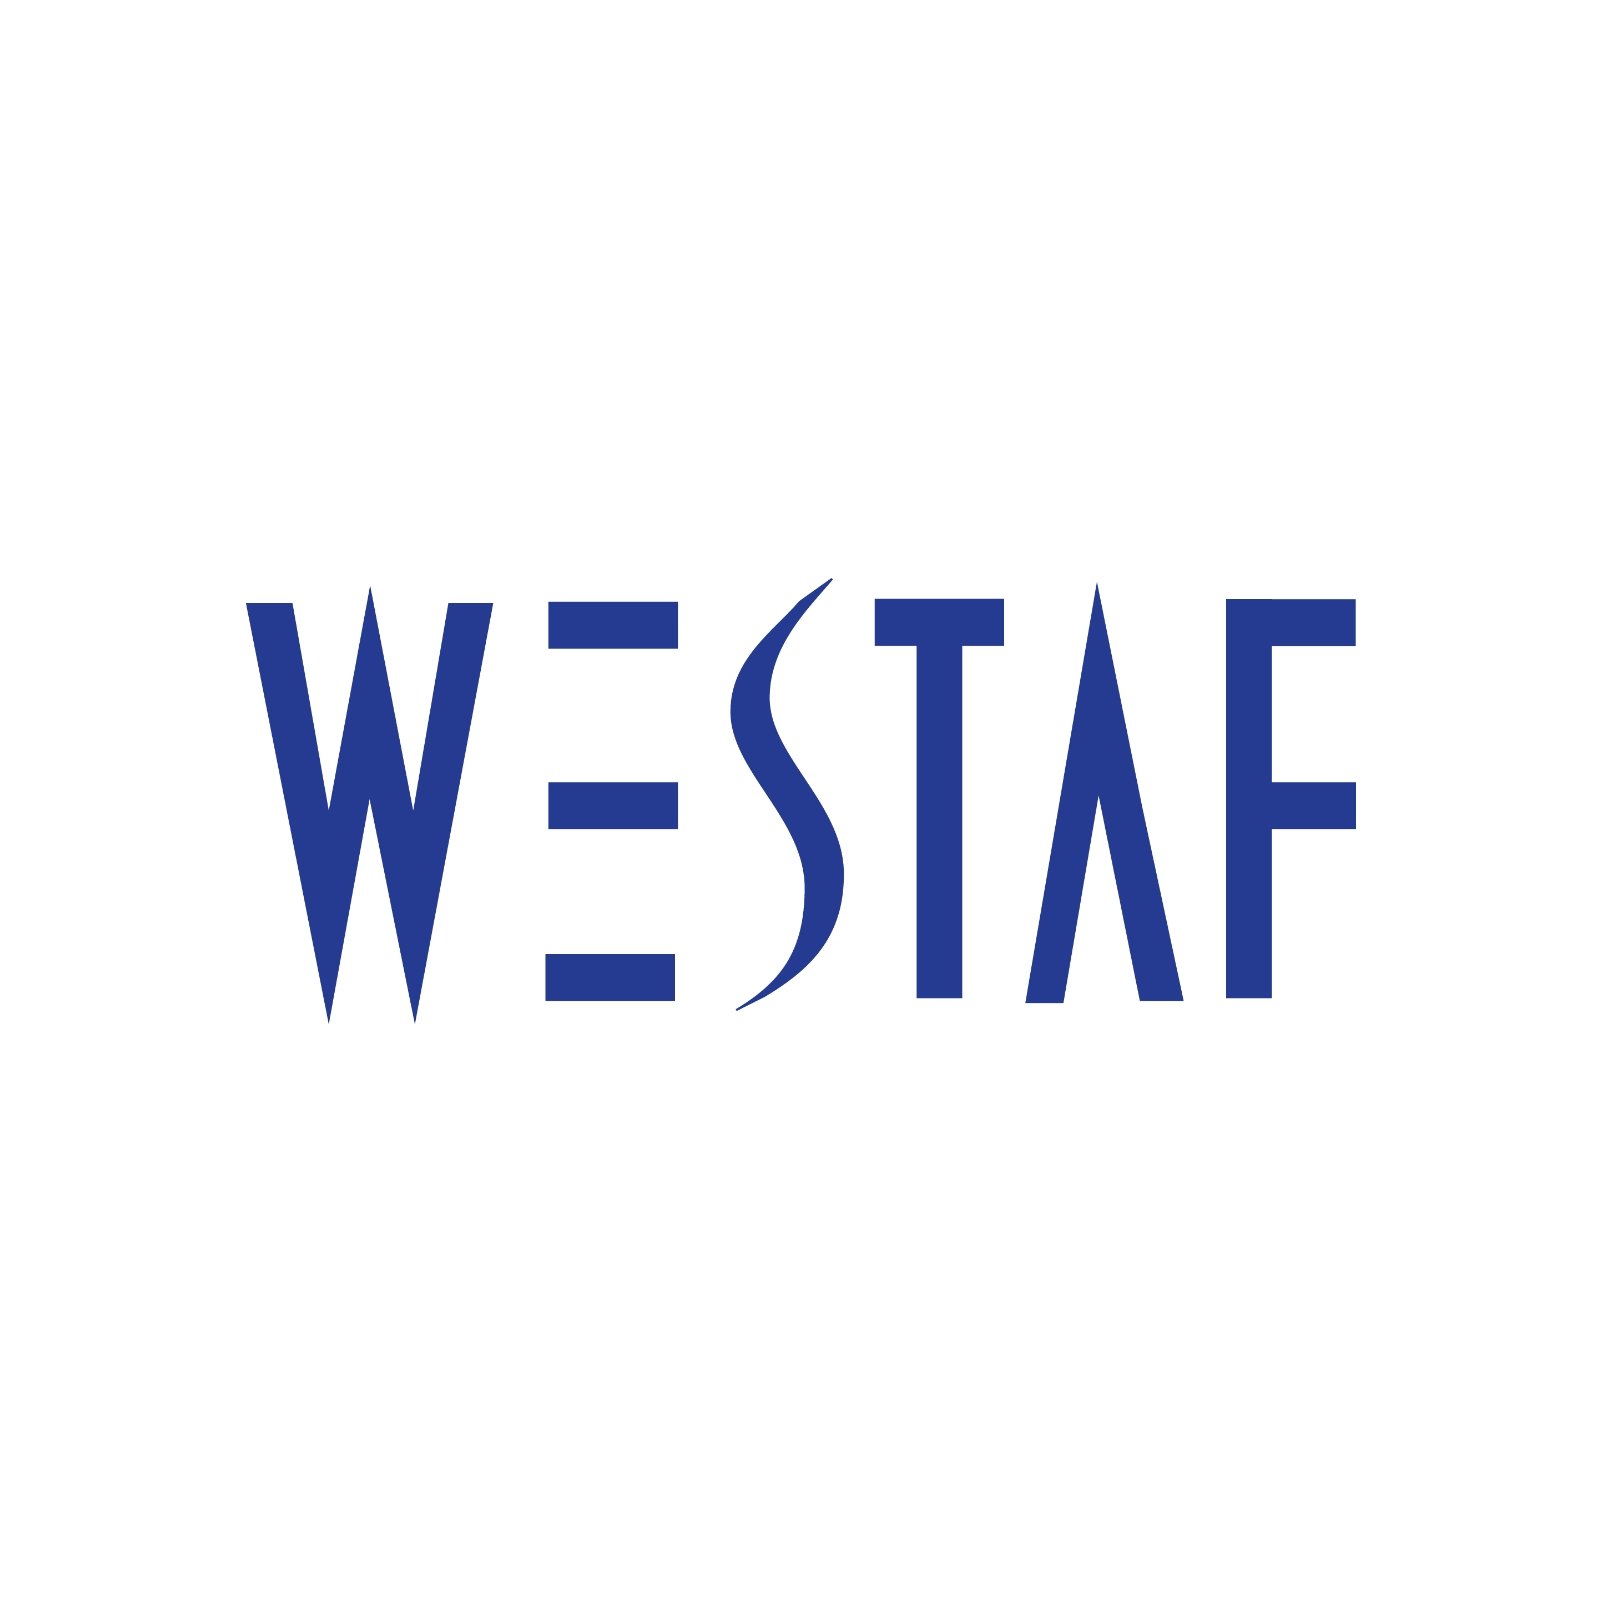 westaf_logo.jpg